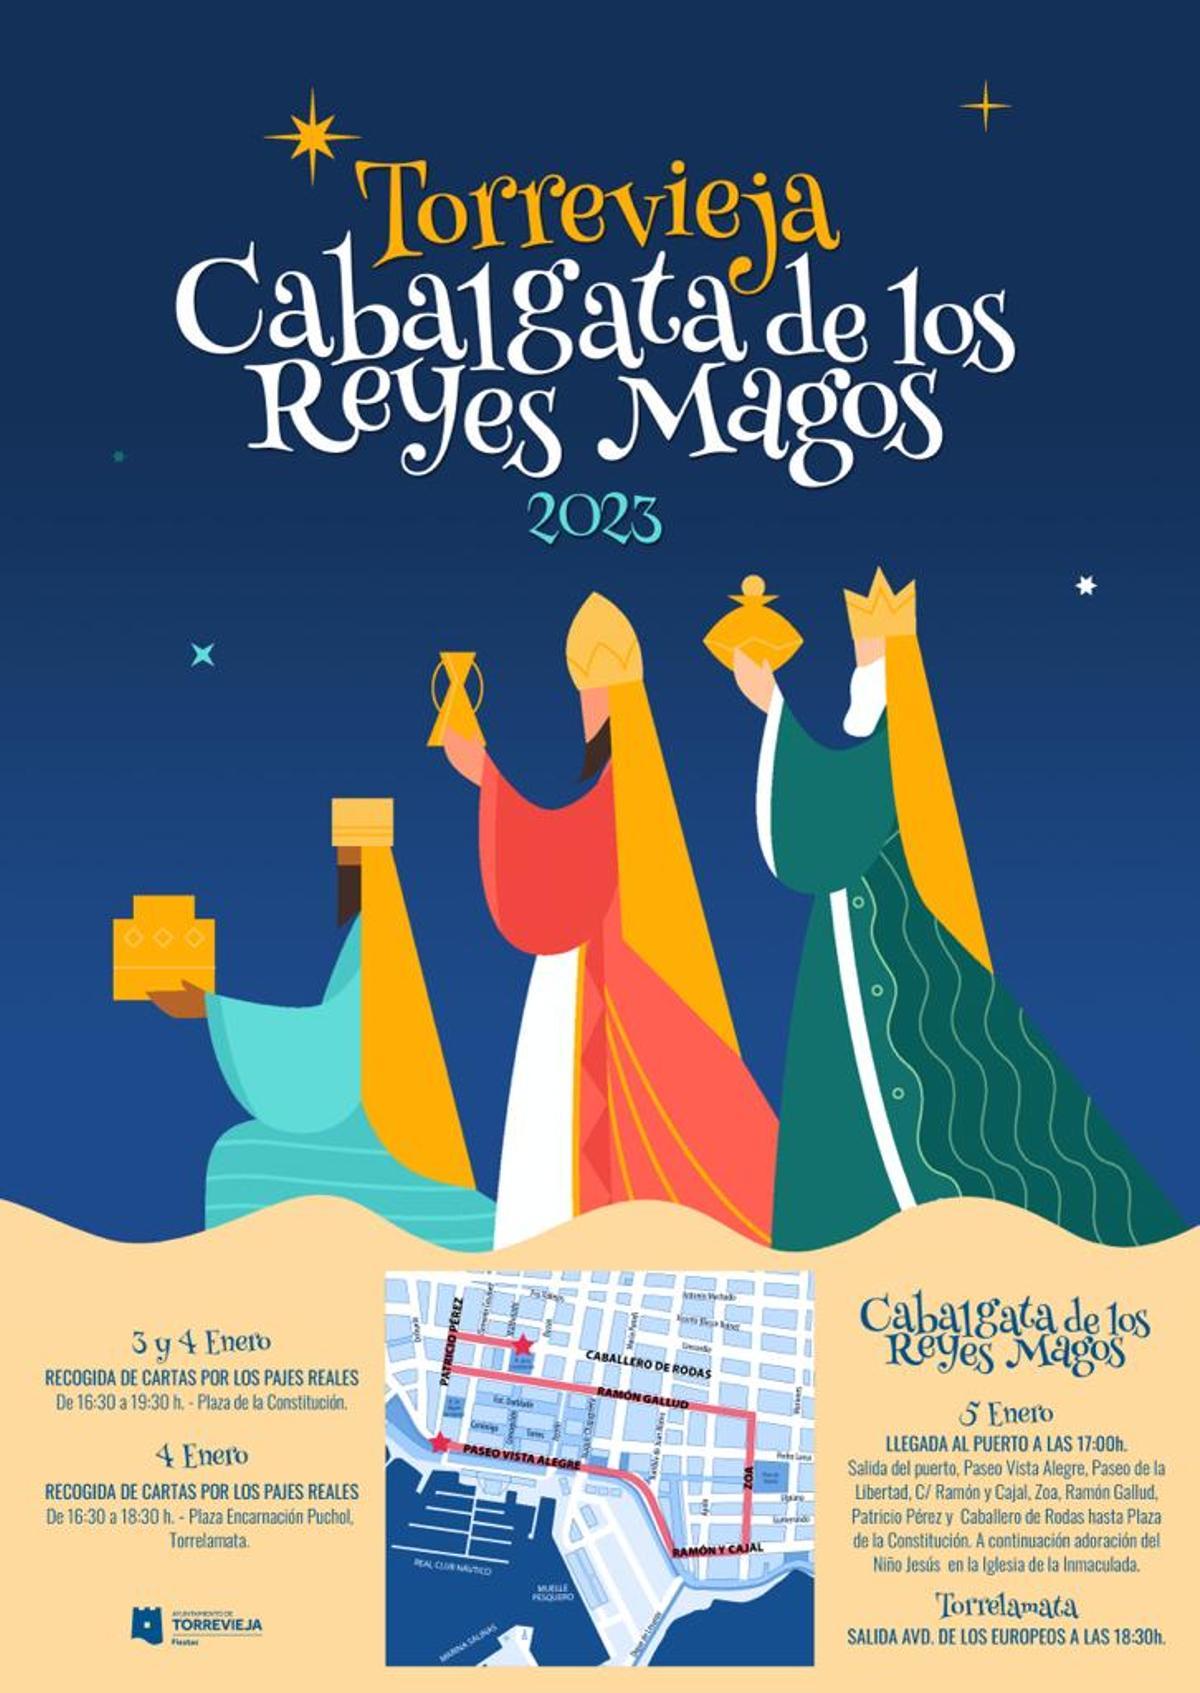 Cartel anunciador de la Cabalgata de Reyes en el que se describe el itinerario